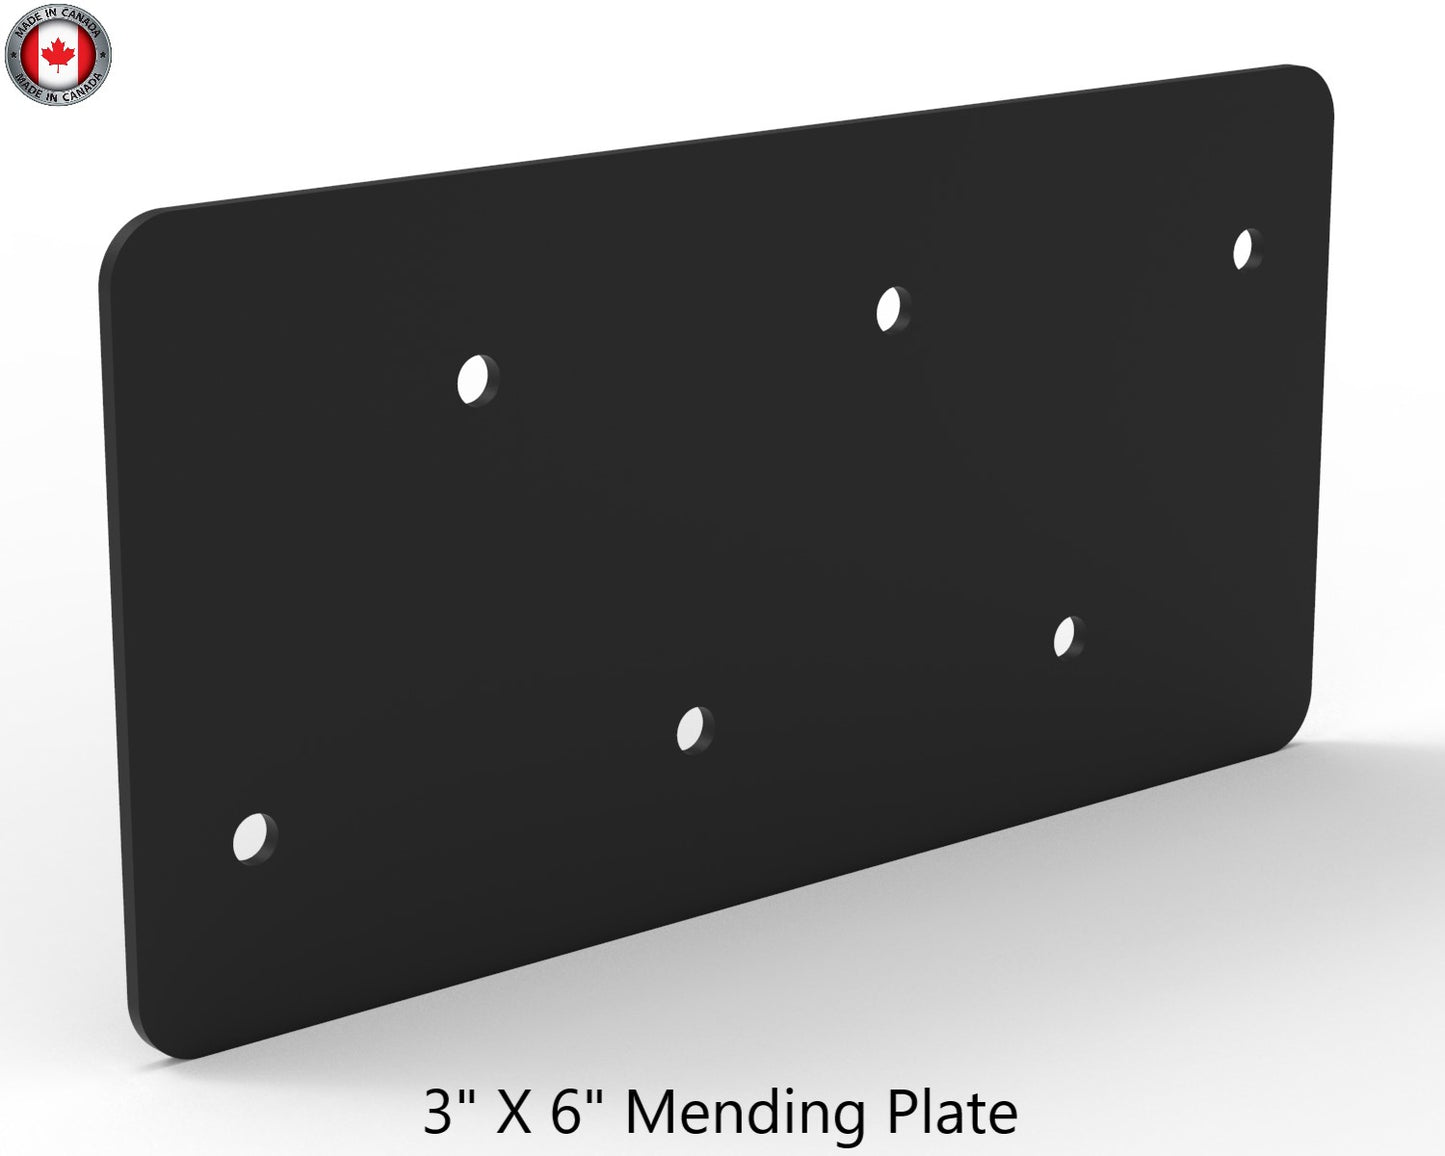 Mending Plate Connectors